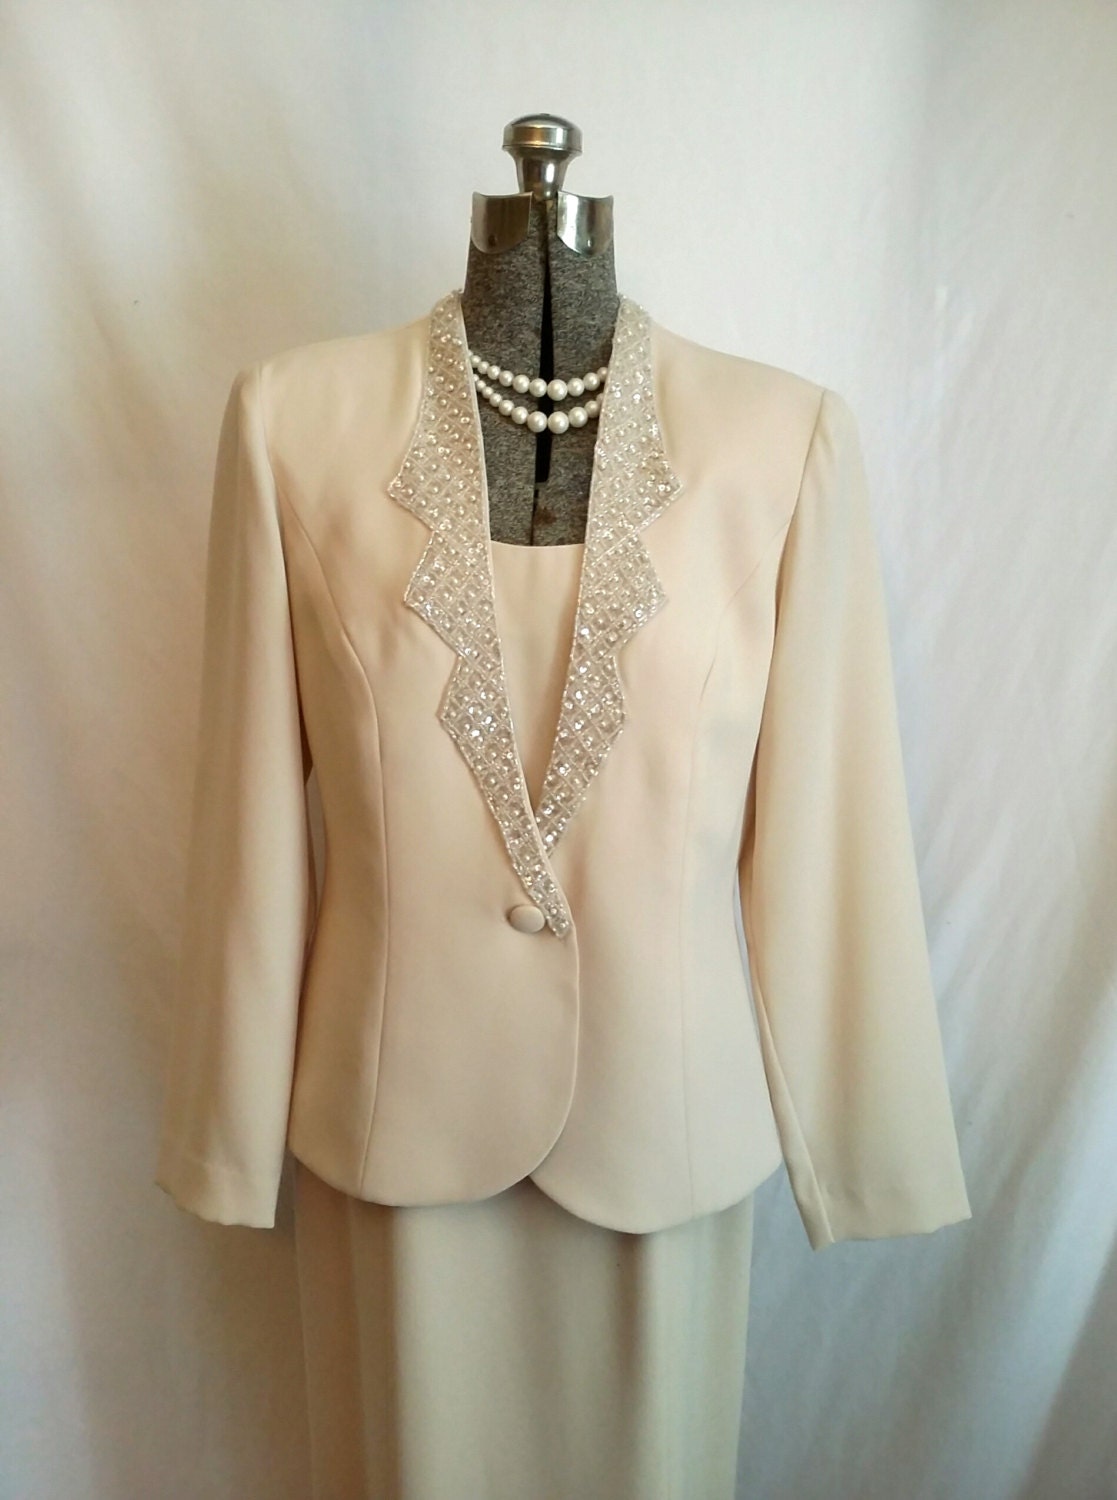 80s champagne dress suit dress jacket suit sequin trim dress